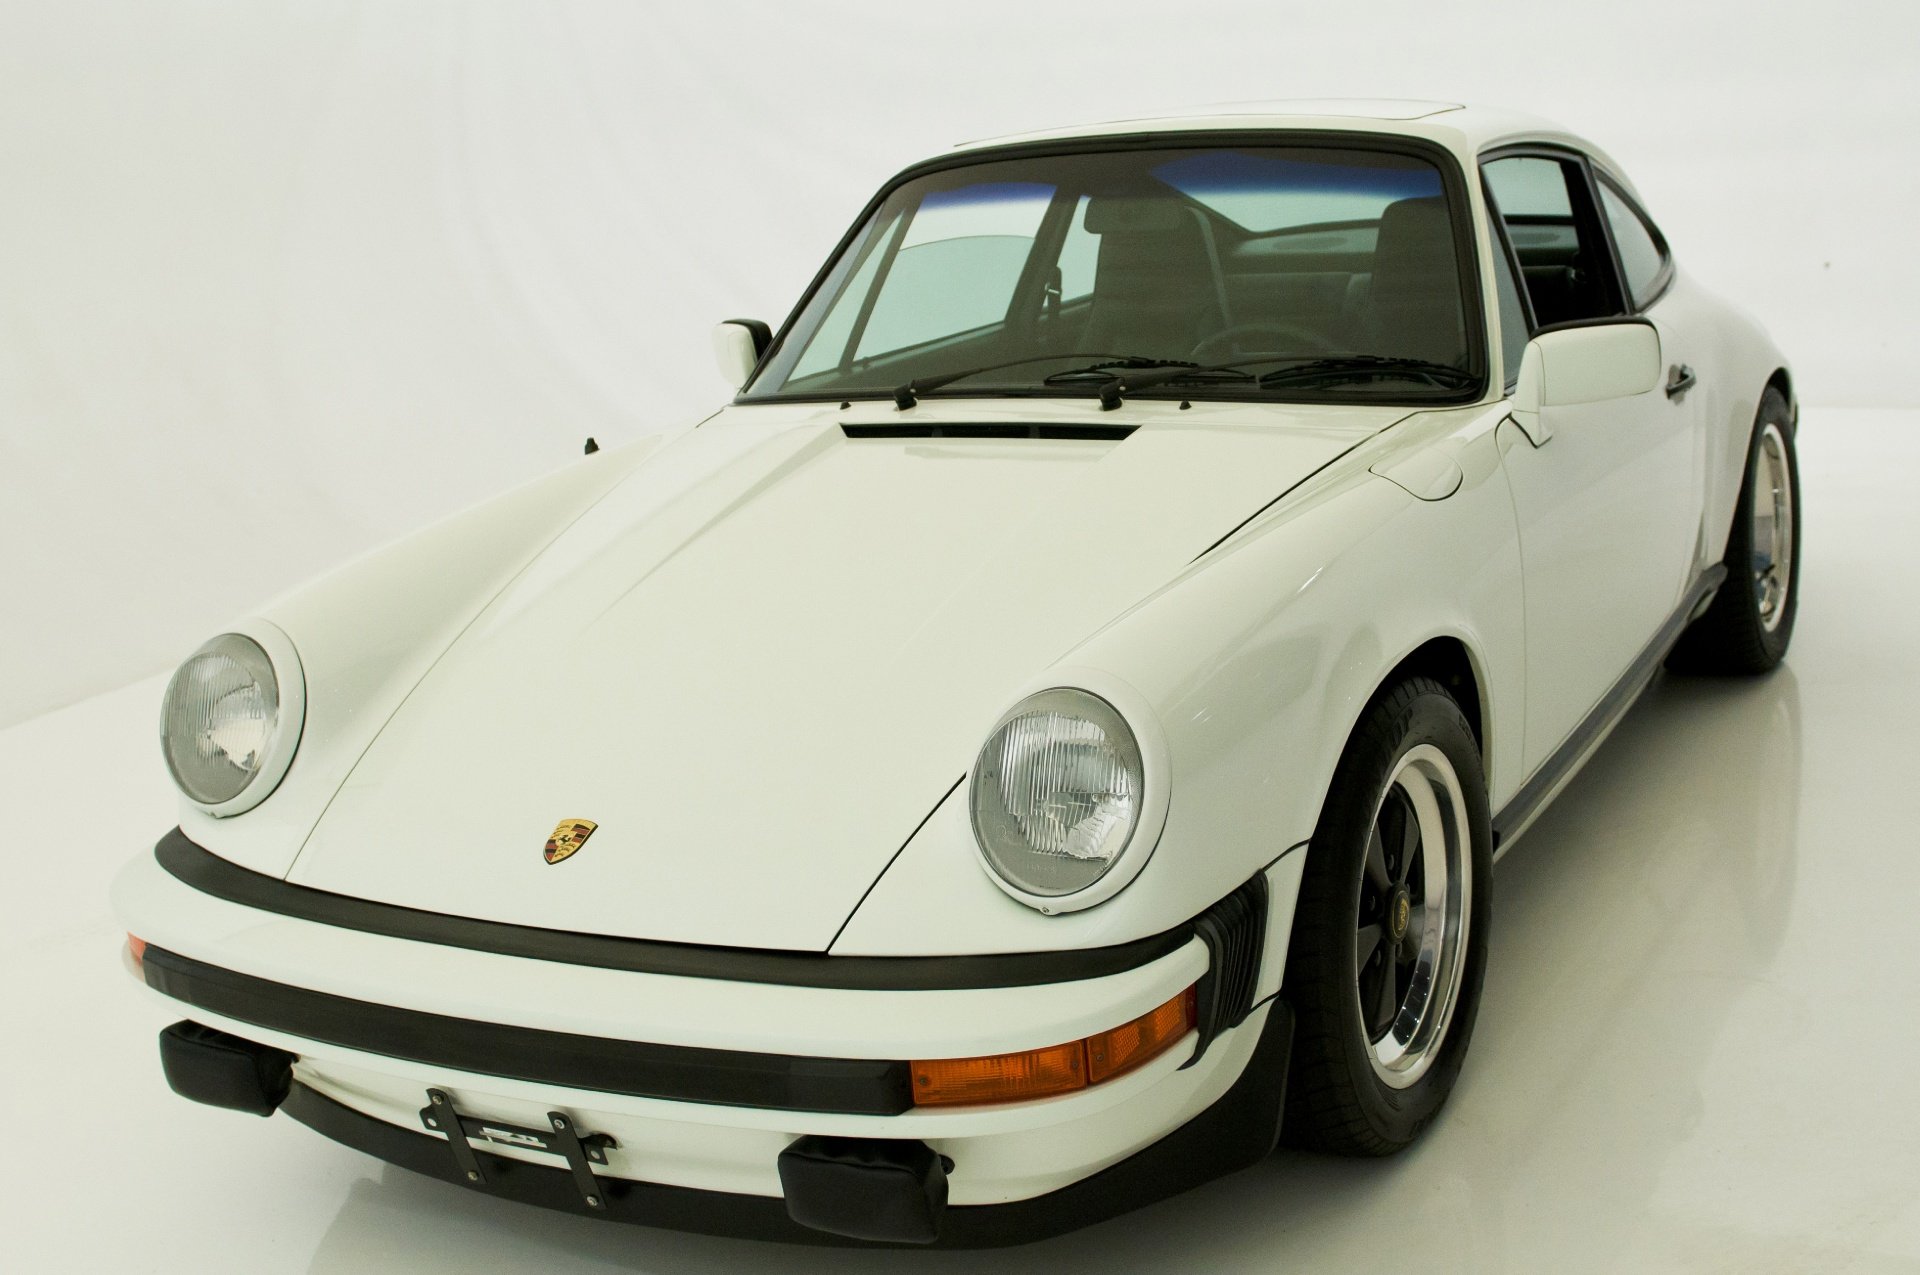 1978, Porsche, 911 cs, Coupe, White, Cars Wallpaper